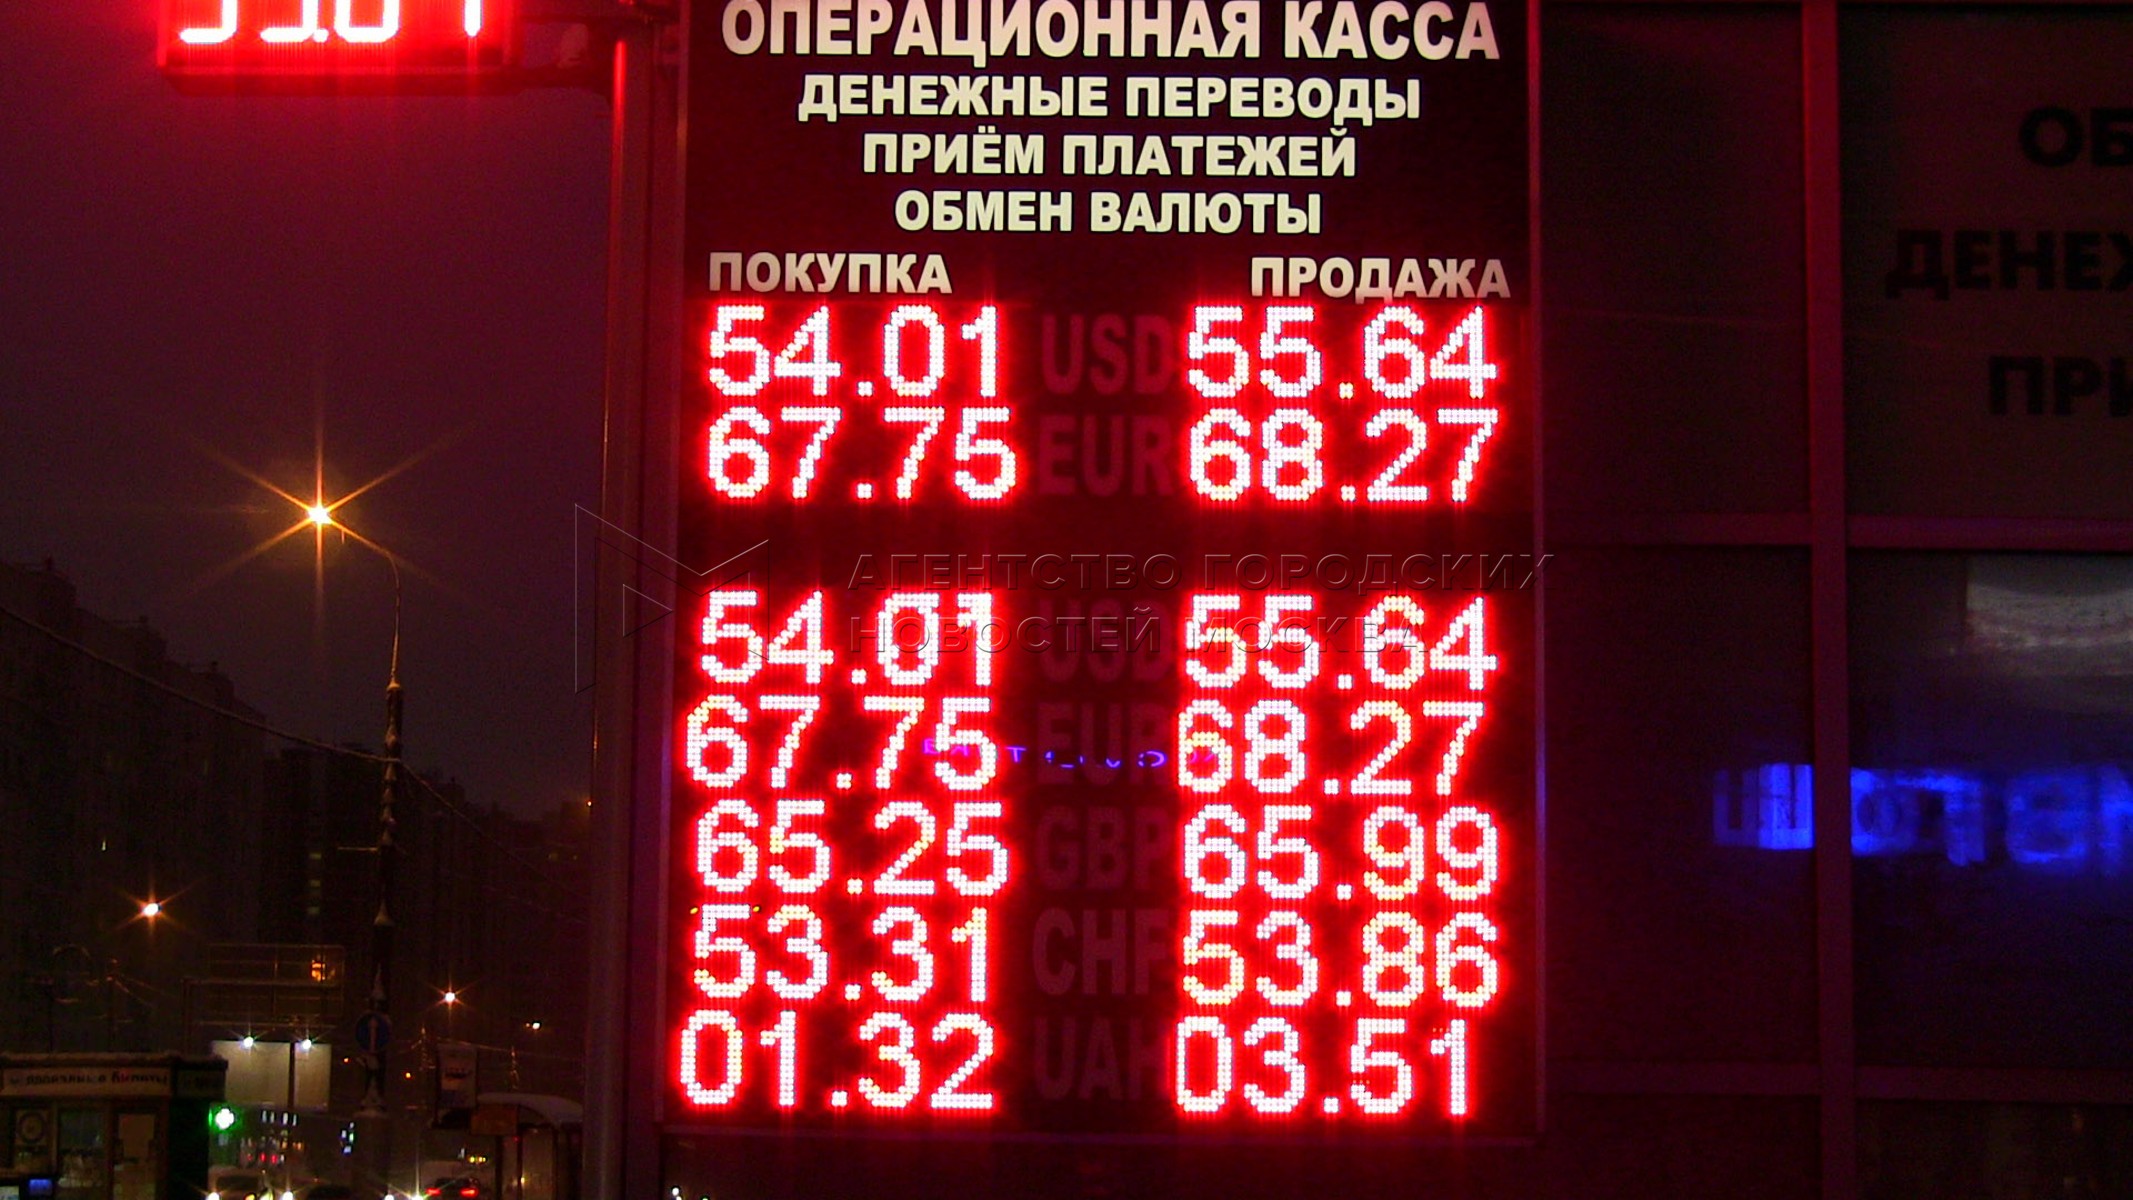 Обмен на лиговском курс валют. 49 Валют. Операционные кассы обмена валют в Москве на сегодня.